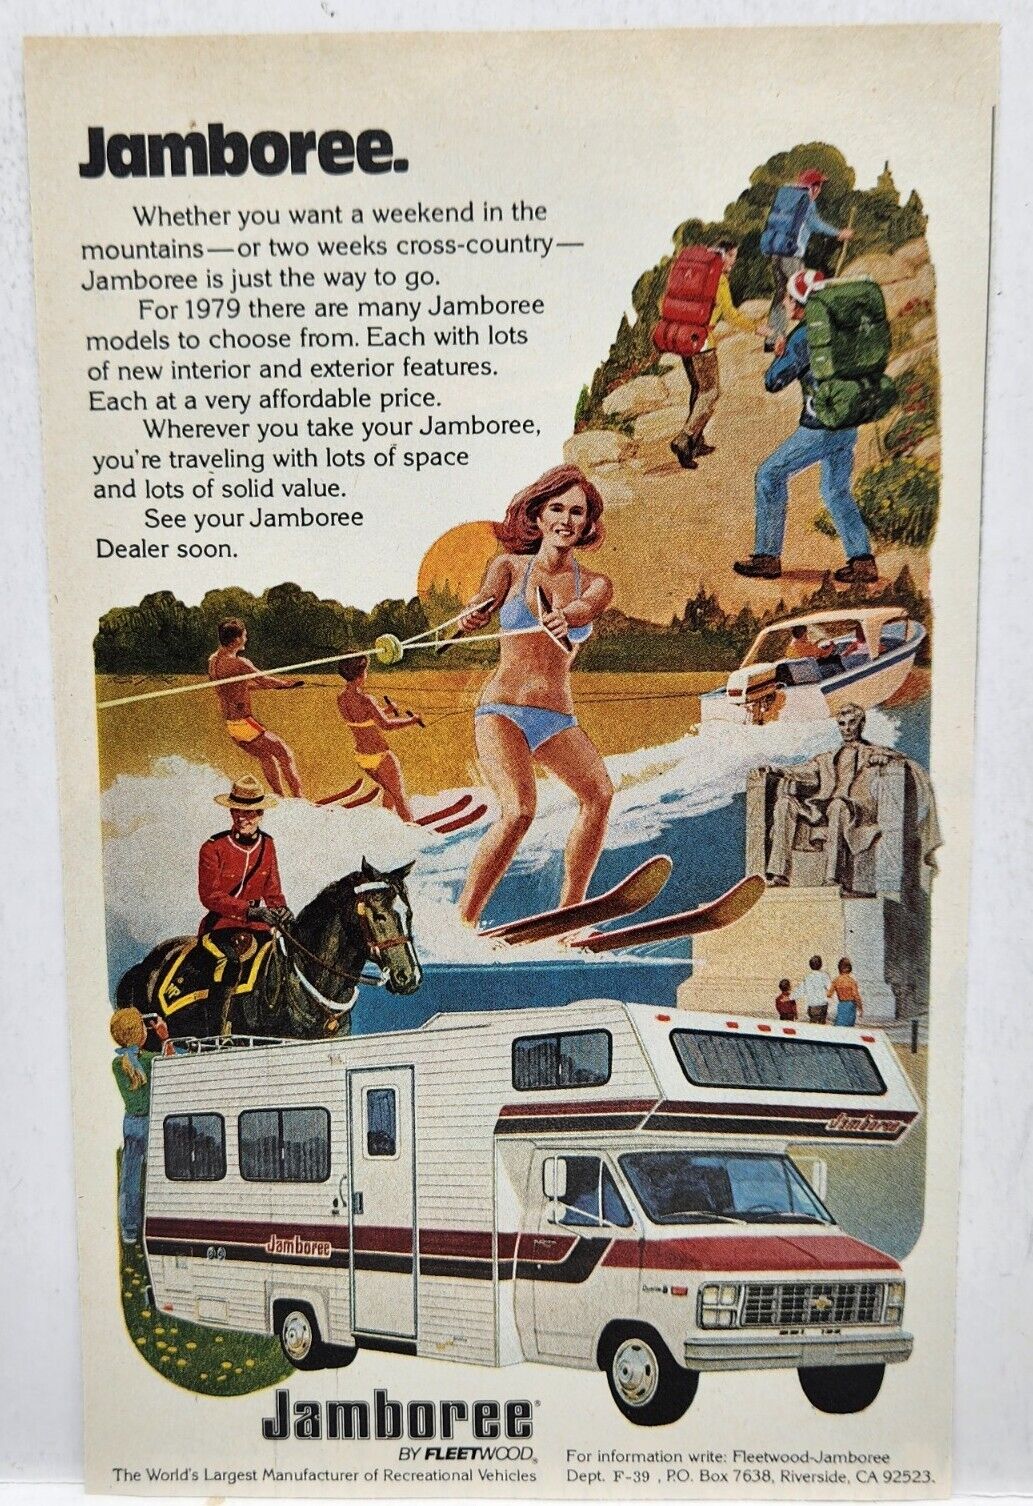 1979 Fleetwood Jamboree Camper Camping Vintage Print Ad Poster Man Cave Deco 70s